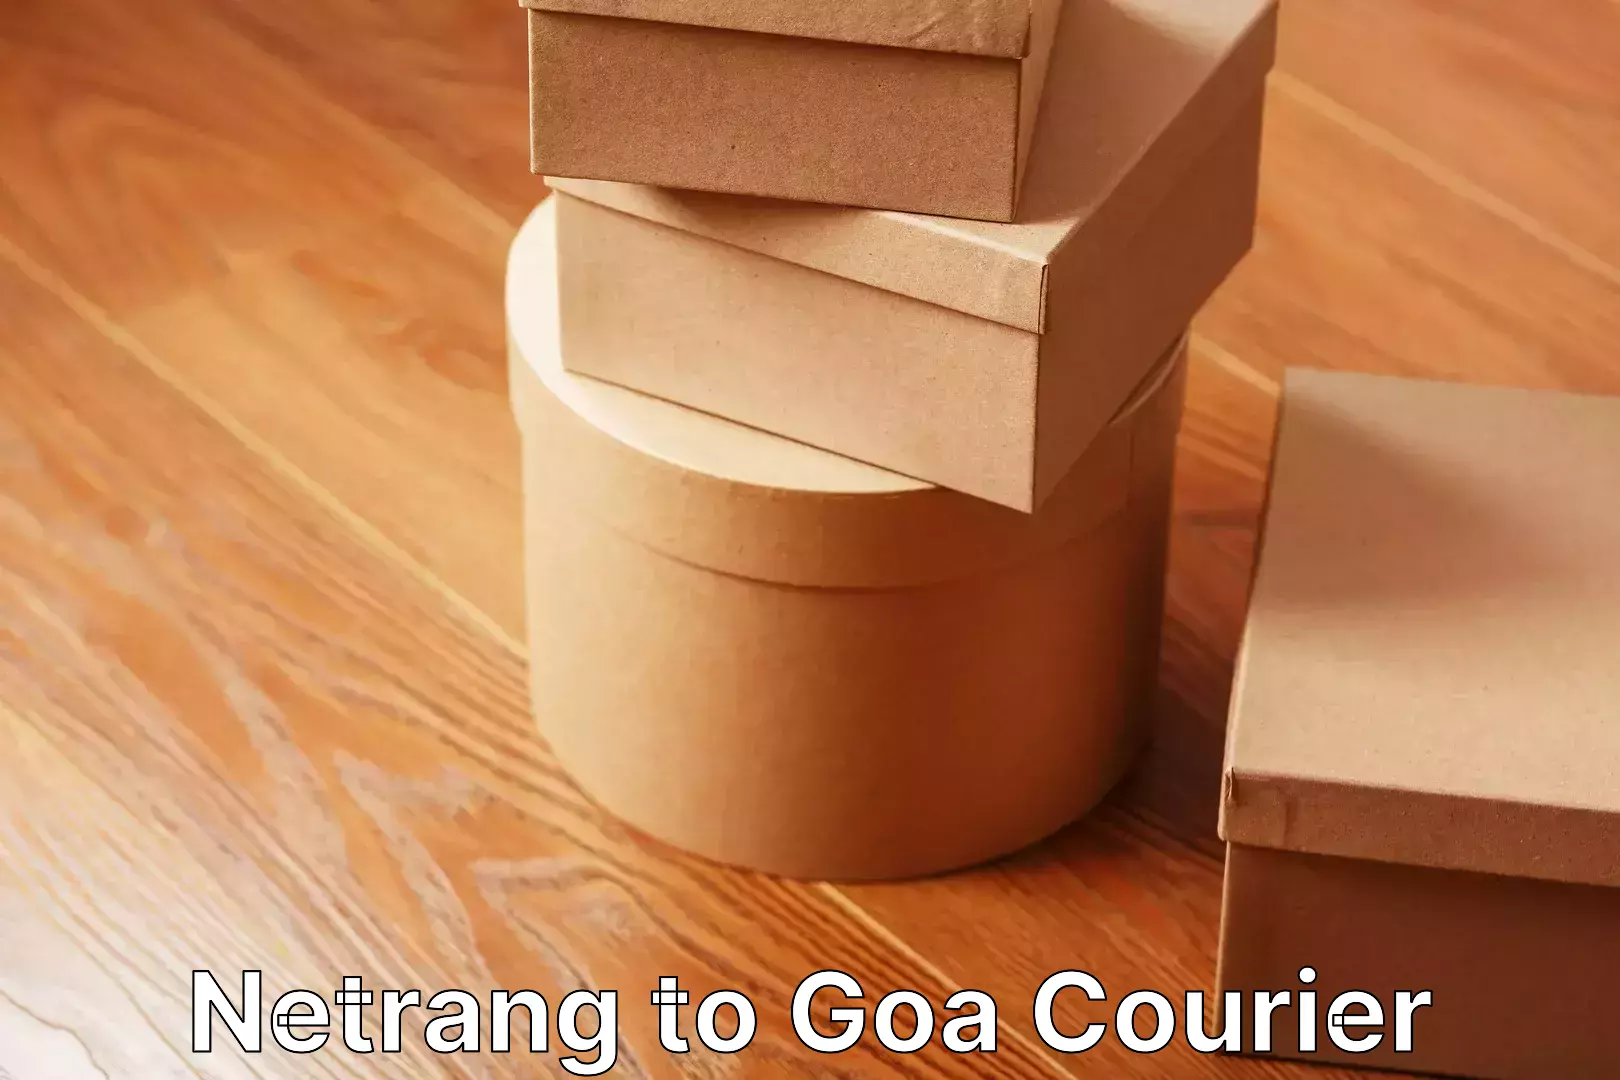 Moving service excellence Netrang to Goa